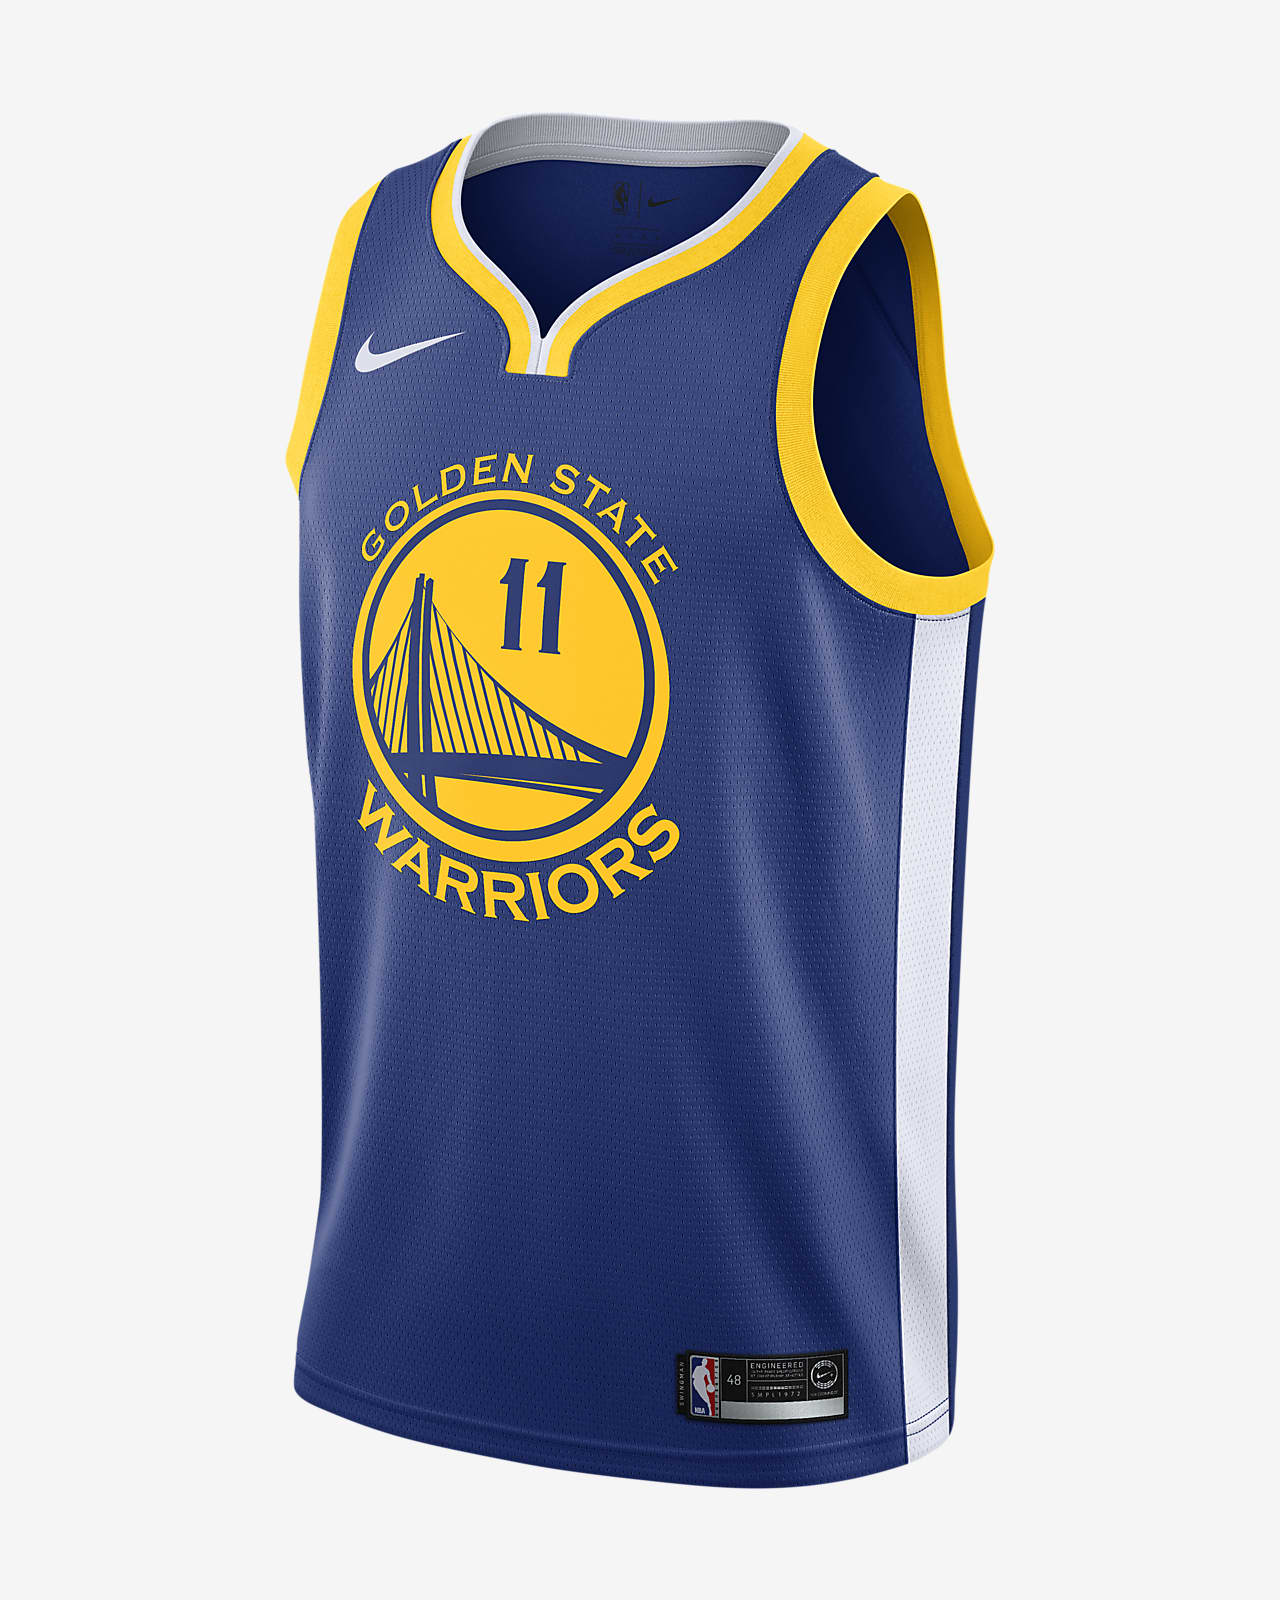 金州勇士队 (Klay Thompson) Nike Icon Edition Swingman Jersey NBA Jersey 男子球衣